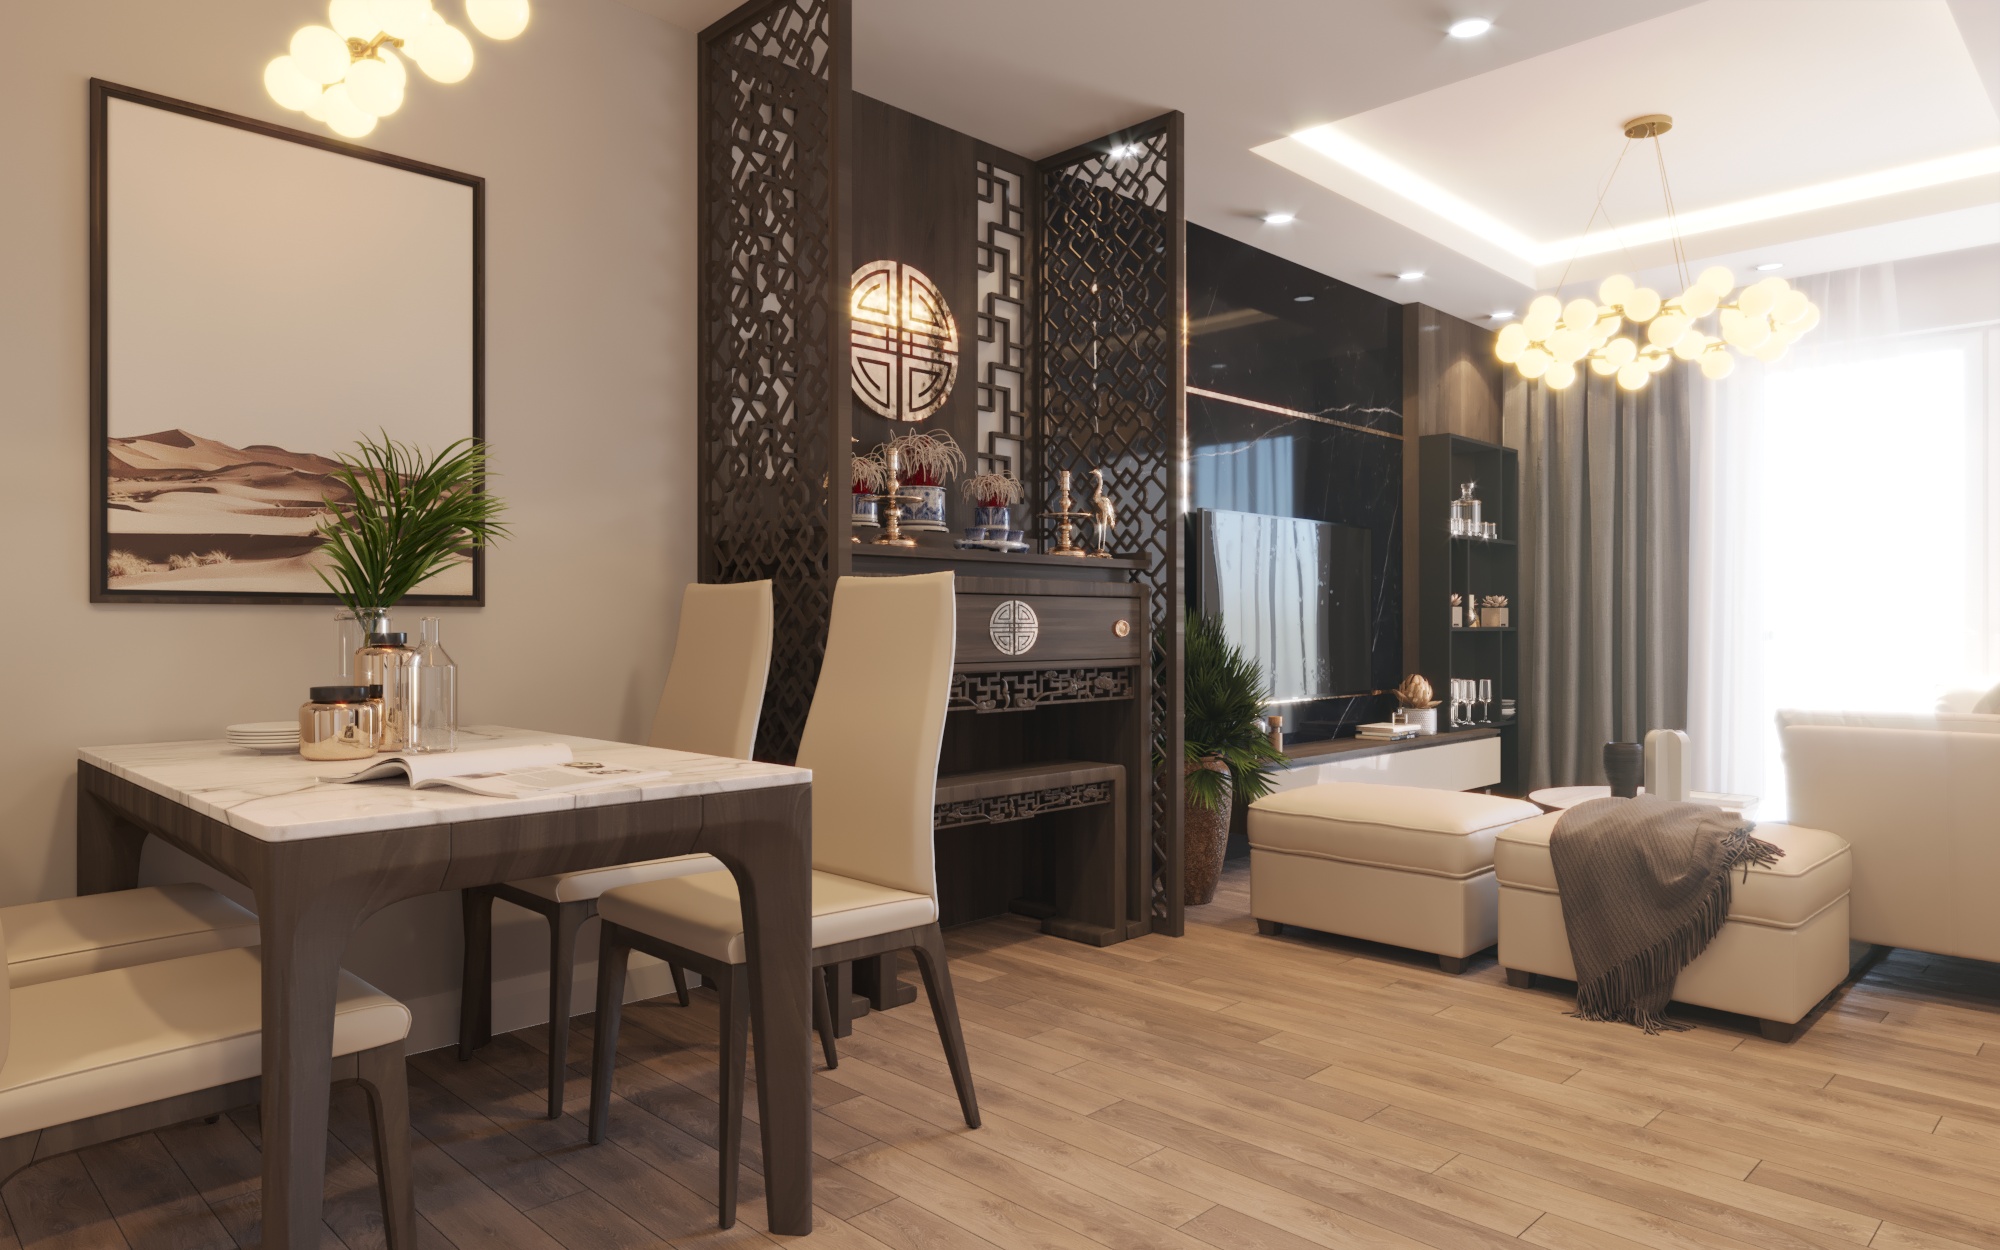 Imperial Plaza - 360 Giải Phóng là một dự án thiết kế nội thất chung cư đẳng cấp, được thực hiện bởi đội ngũ chuyên nghiệp từ Home&Home. Hãy xem ảnh liên quan để thấy cách những ý tưởng đẹp mắt được áp dụng để tạo ra không gian sống hiện đại và tiện nghi.